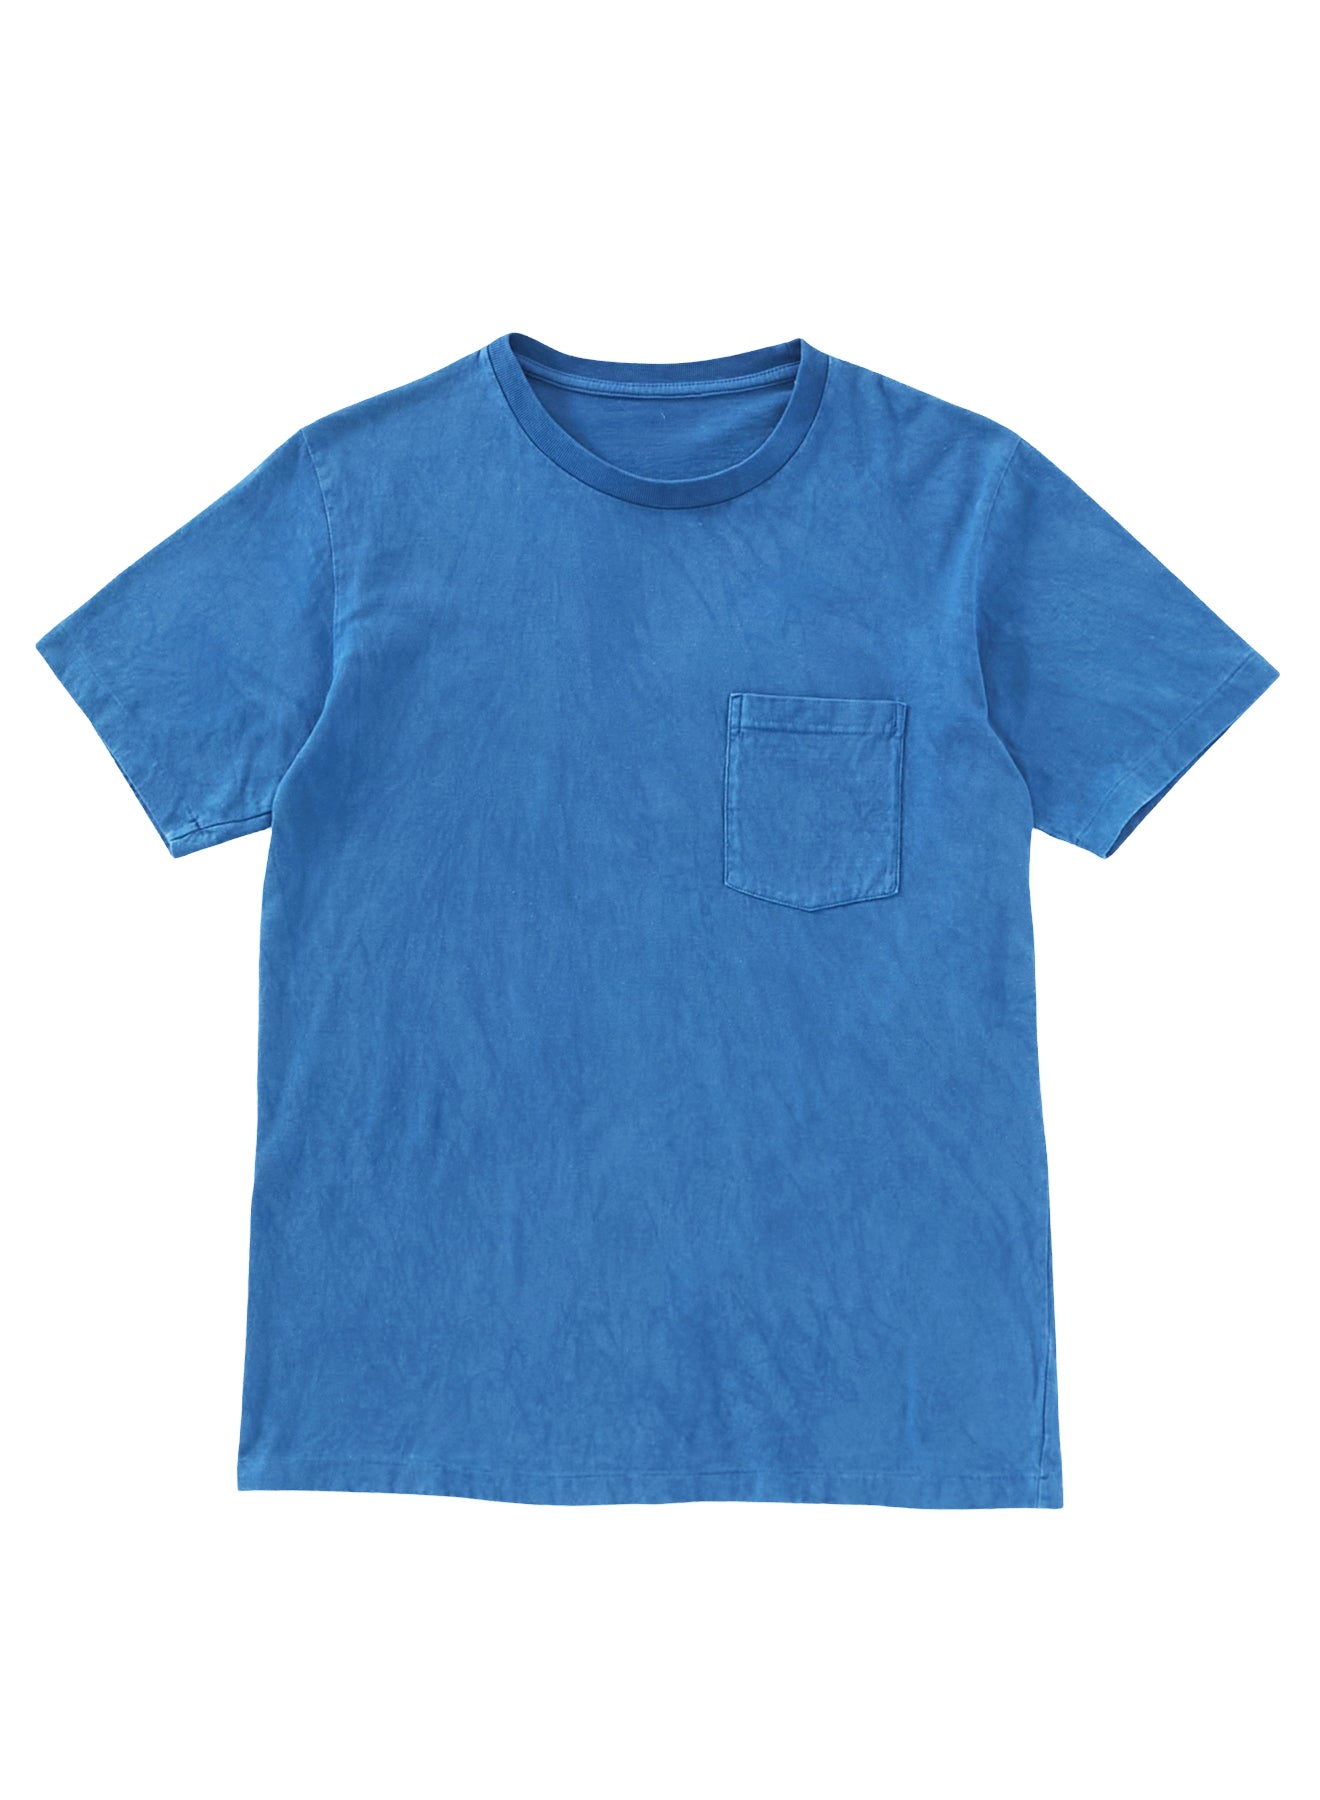 Blue Blue Japan Unisex Knitted indigo "Bamboo Tiger" Pocket T-shirt - Indigo